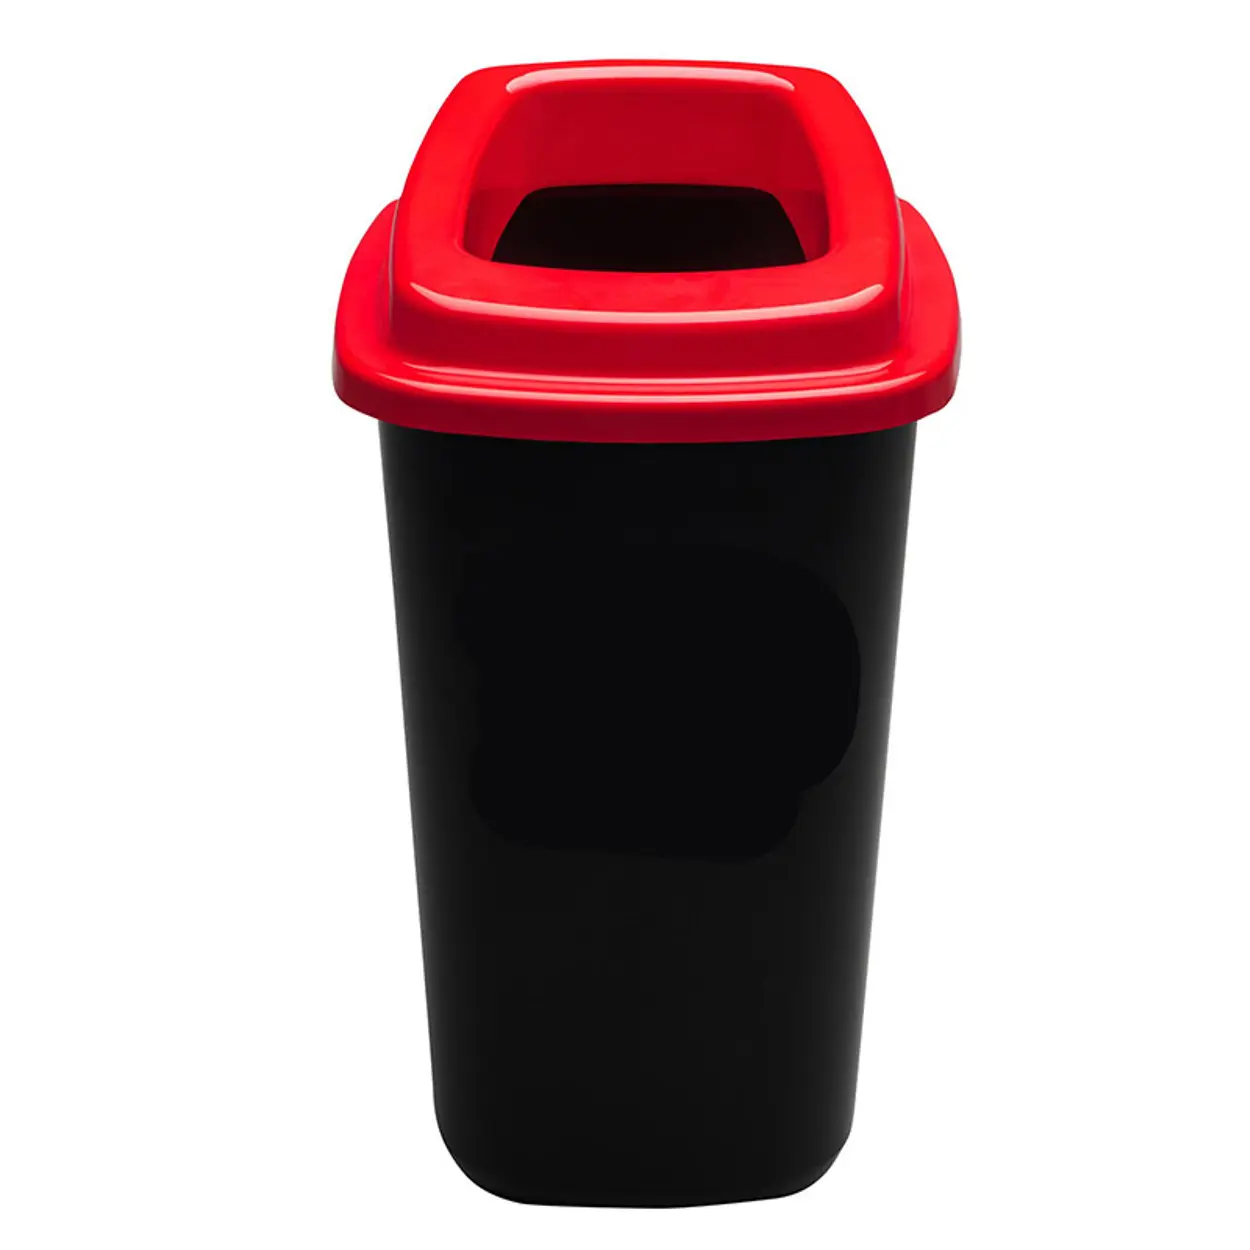 Plastový kôš na triedený odpad, 45 l, červená